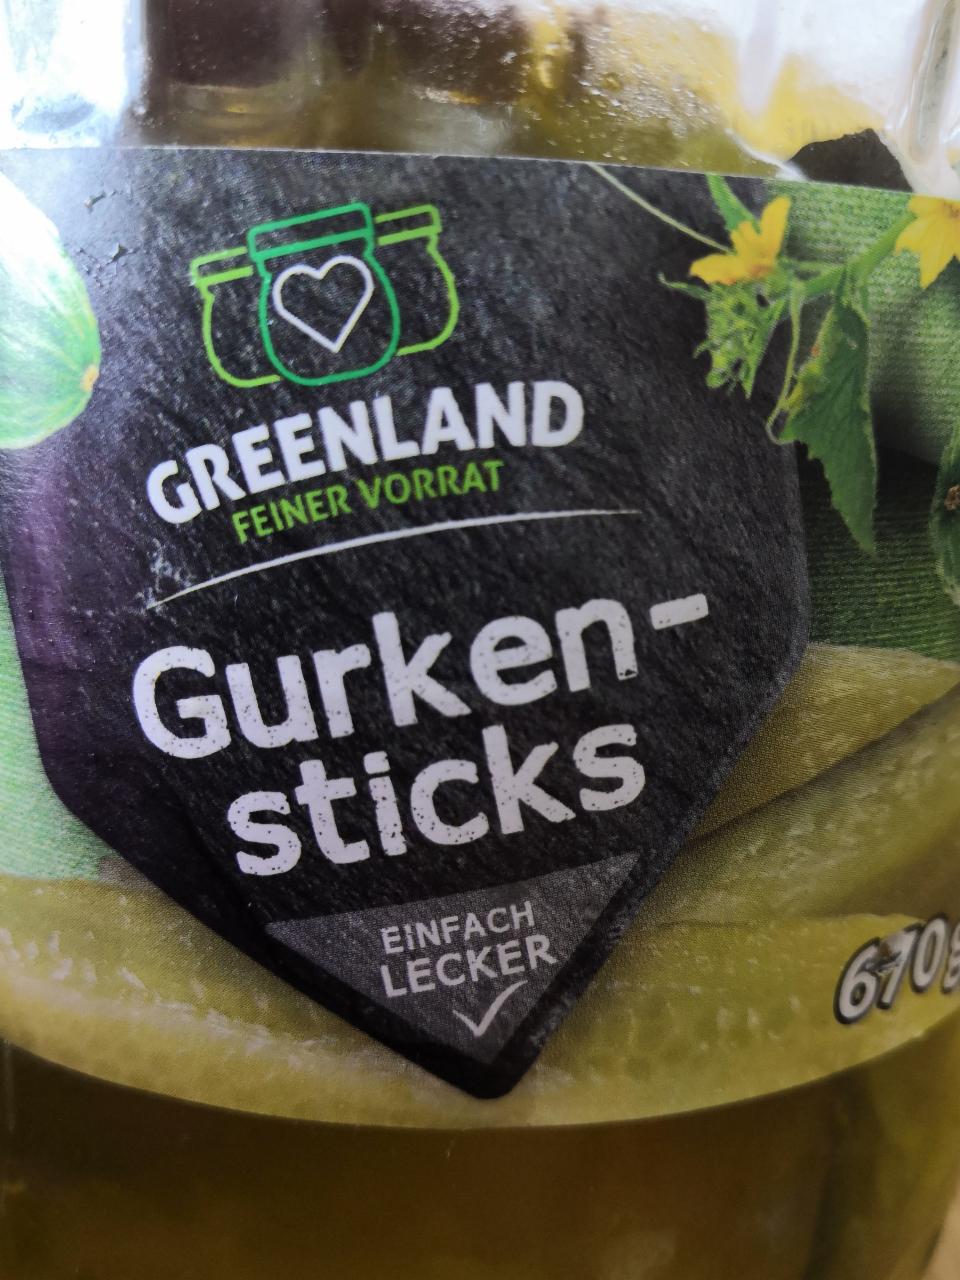 Fotografie - Gurken-sticks Greenland